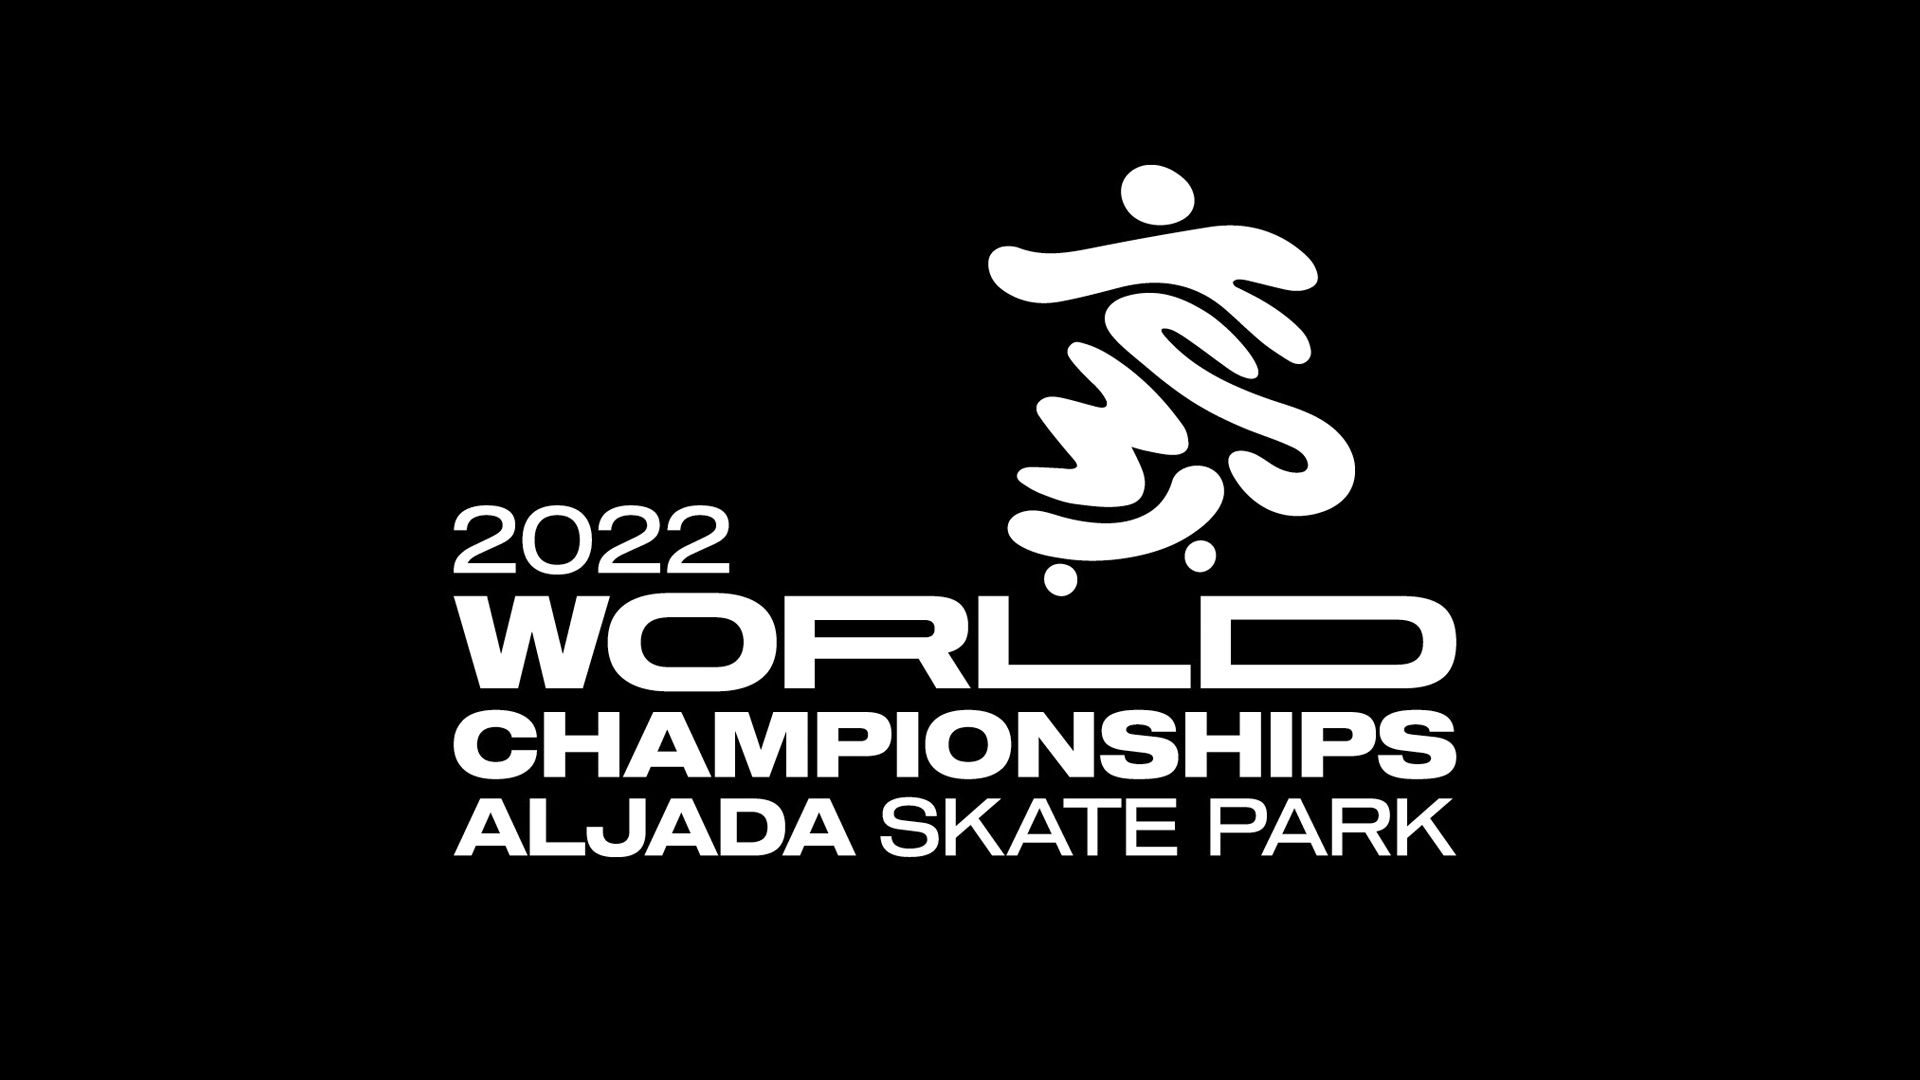 images/Sharjah_pre-event_PR_IMAGES/WST_World-Championsships_2022_Blog_1920x1080px_V4.jpg